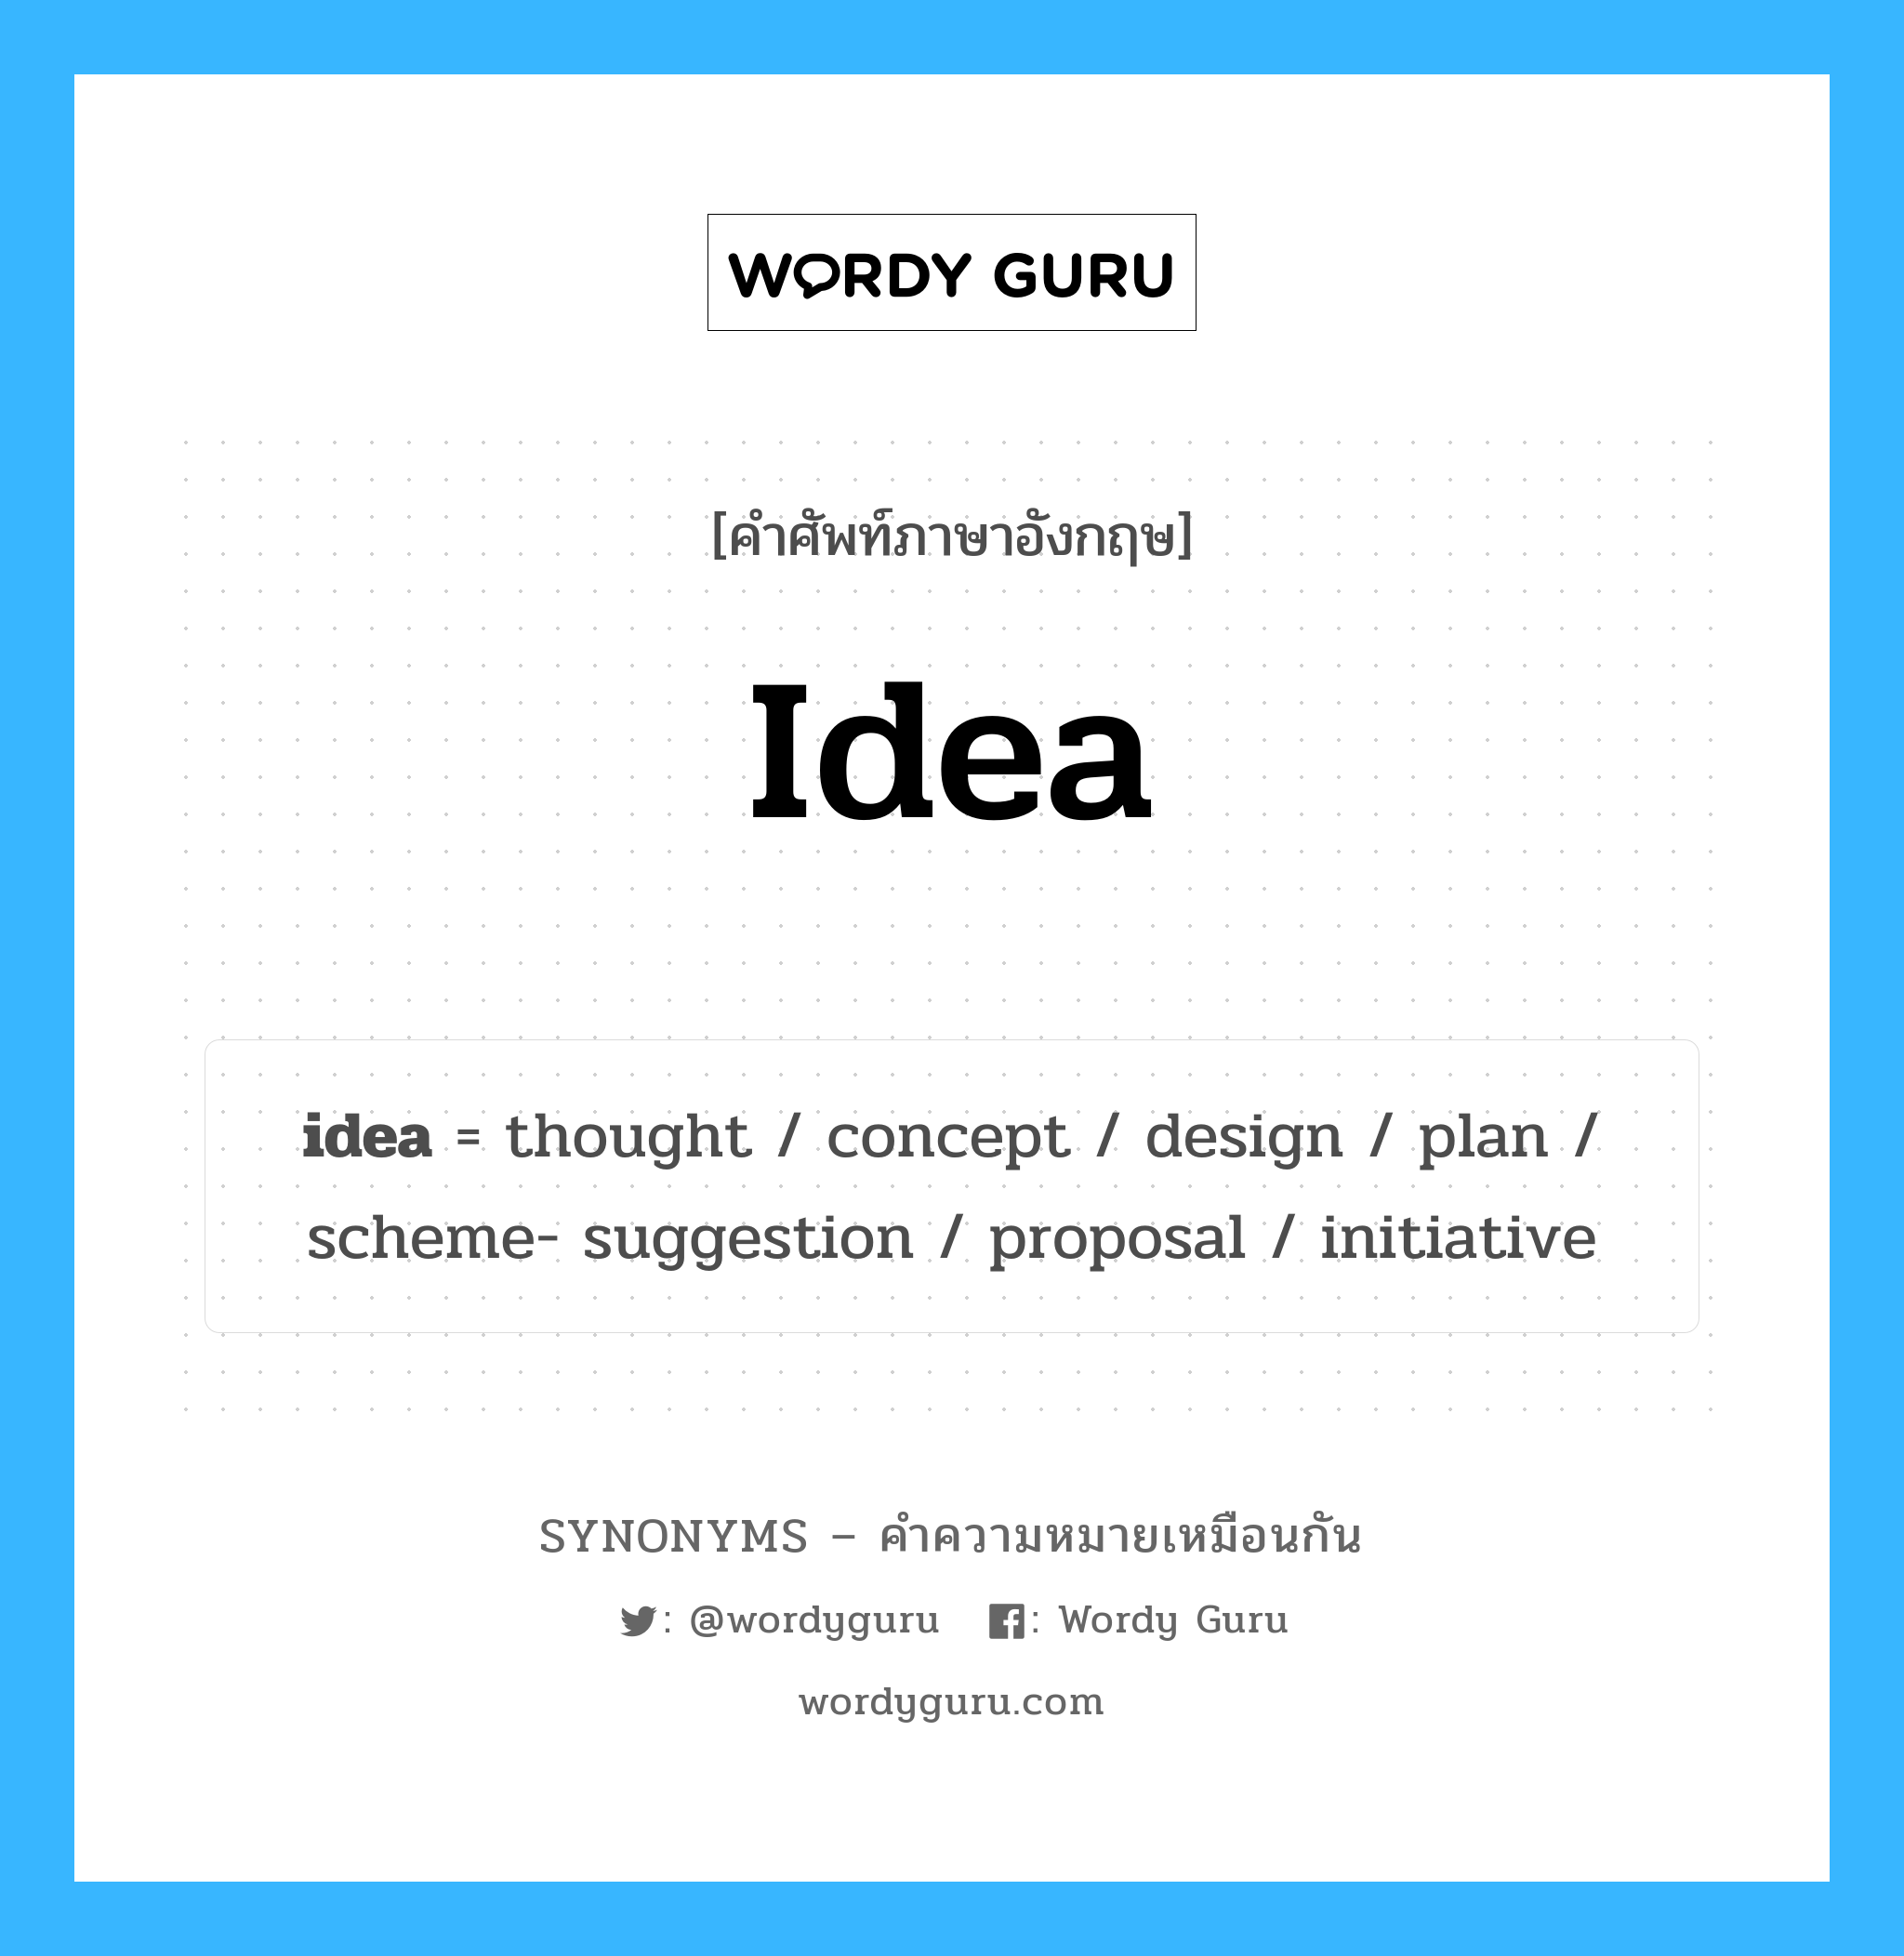 plan เป็นหนึ่งใน idea และมีคำอื่น ๆ อีกดังนี้, คำศัพท์ภาษาอังกฤษ plan ความหมายคล้ายกันกับ idea แปลว่า แผน หมวด idea